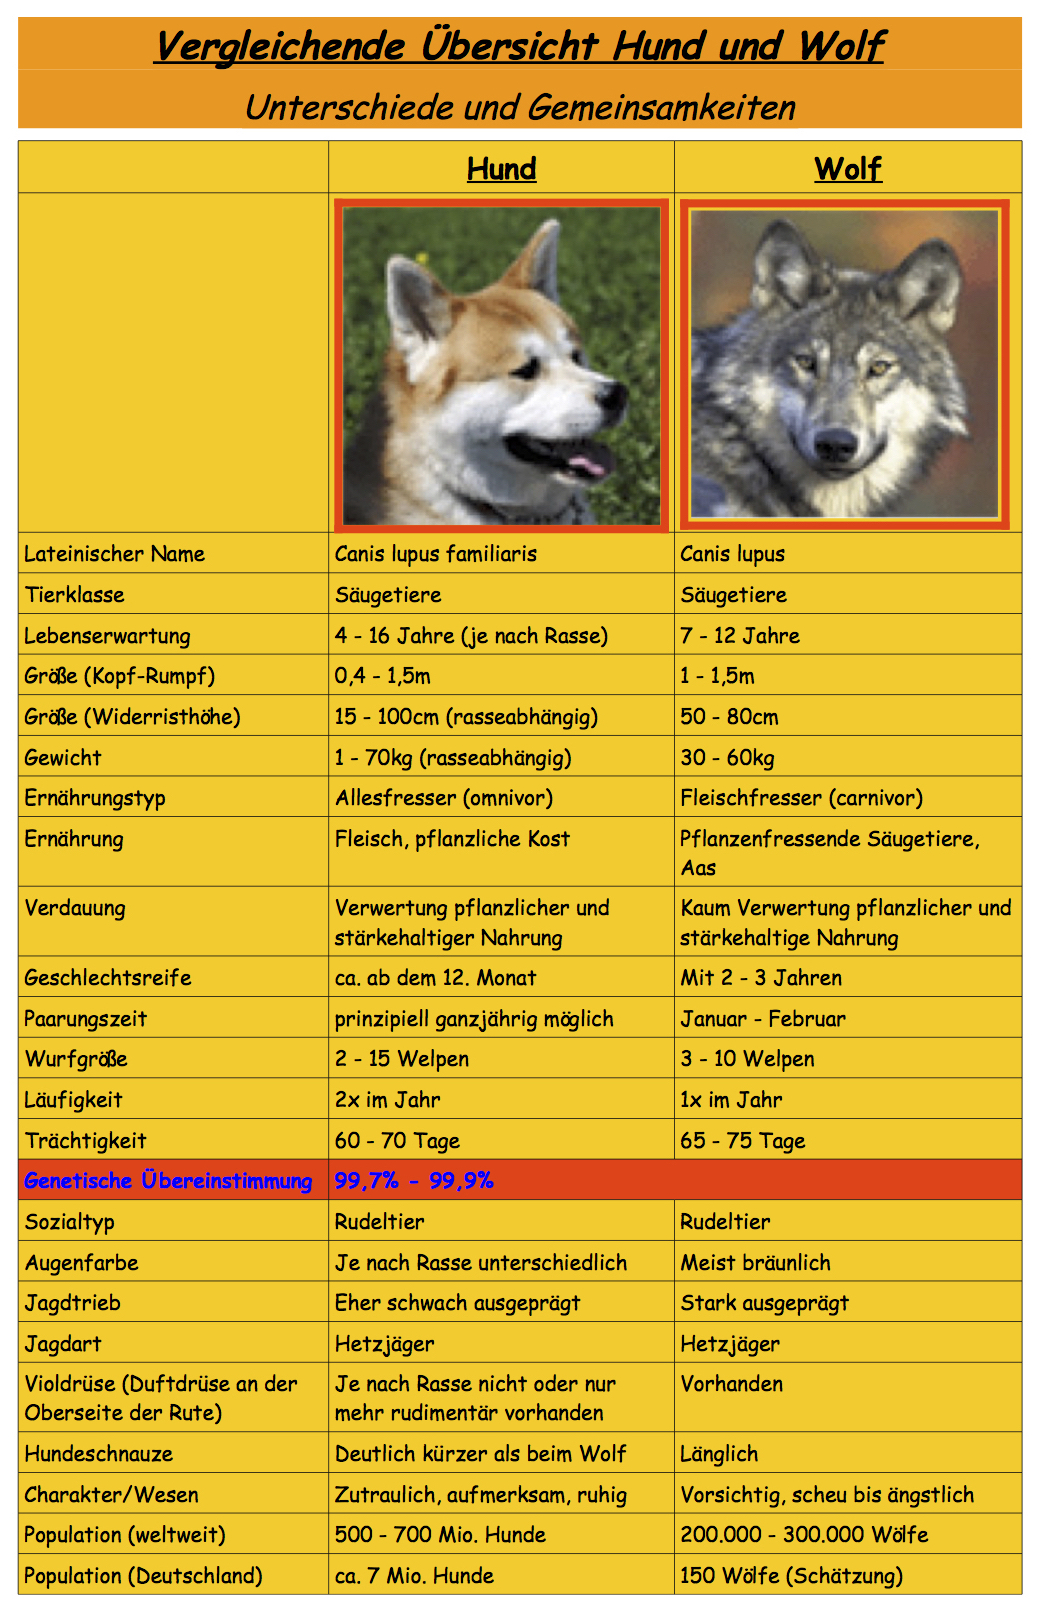 7-Vergleich Wolf-Hund.jpg